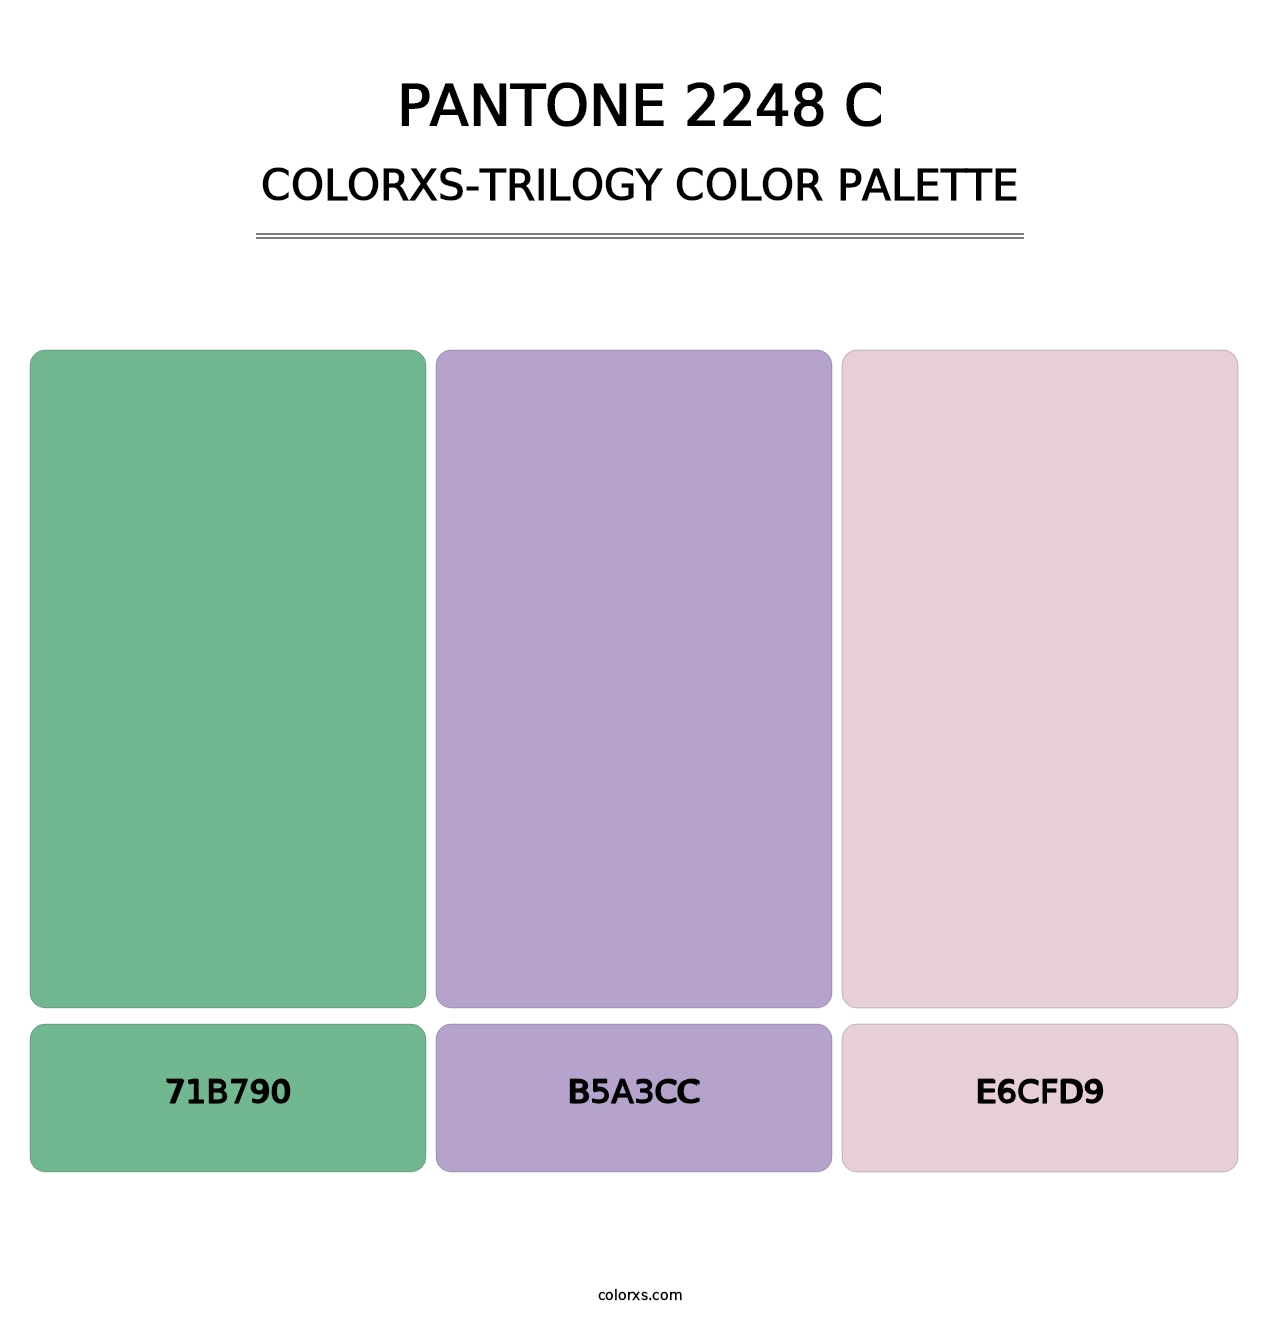 PANTONE 2248 C - Colorxs Trilogy Palette